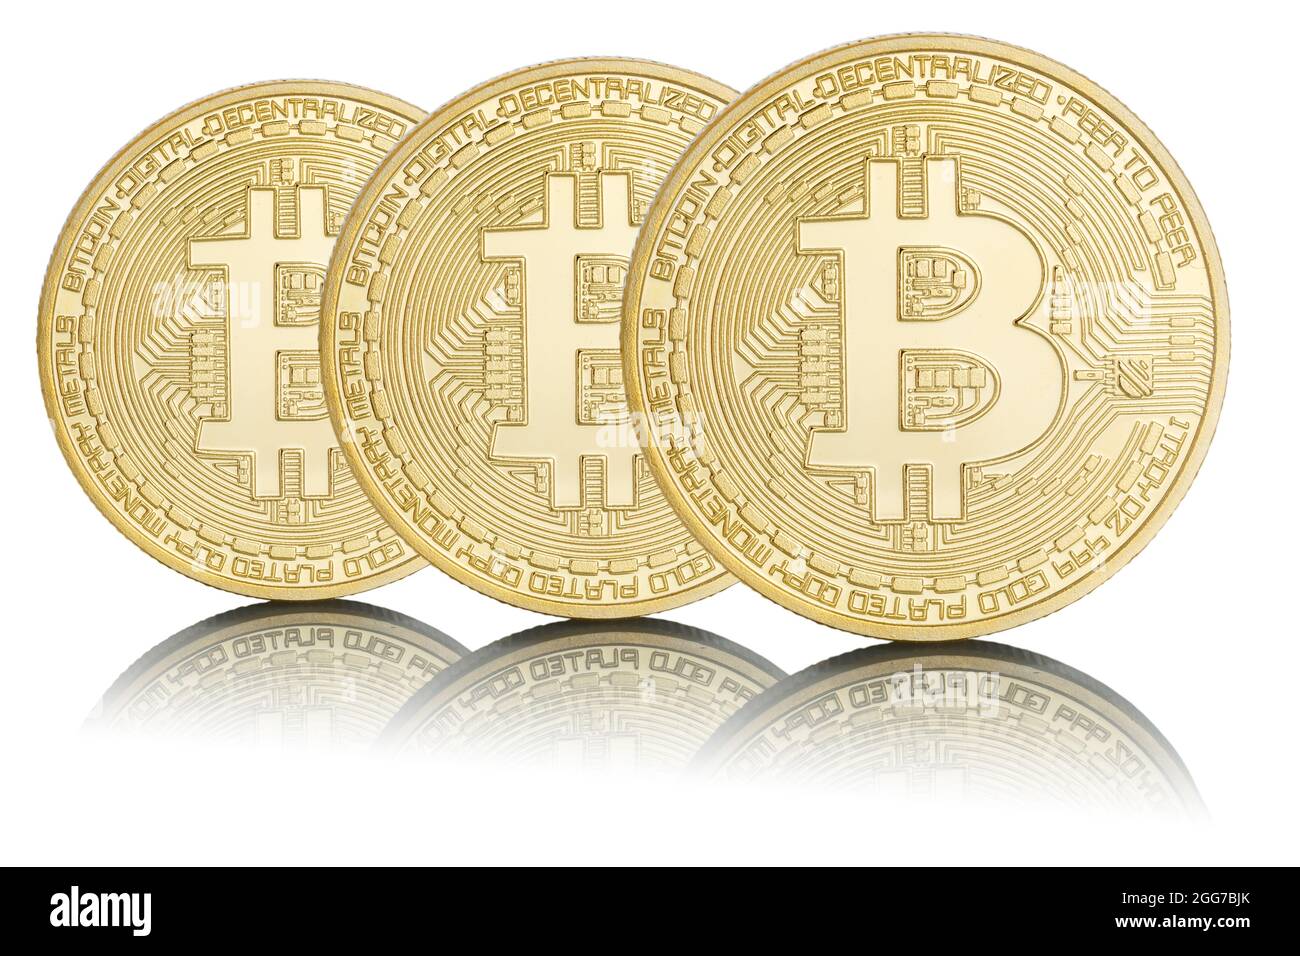 Bitcoin Krypto Währung online bezahlen digitales Geld Kryptowährung Geschäft Finanzen isoliert auf weißem Bit Münze Stockfoto